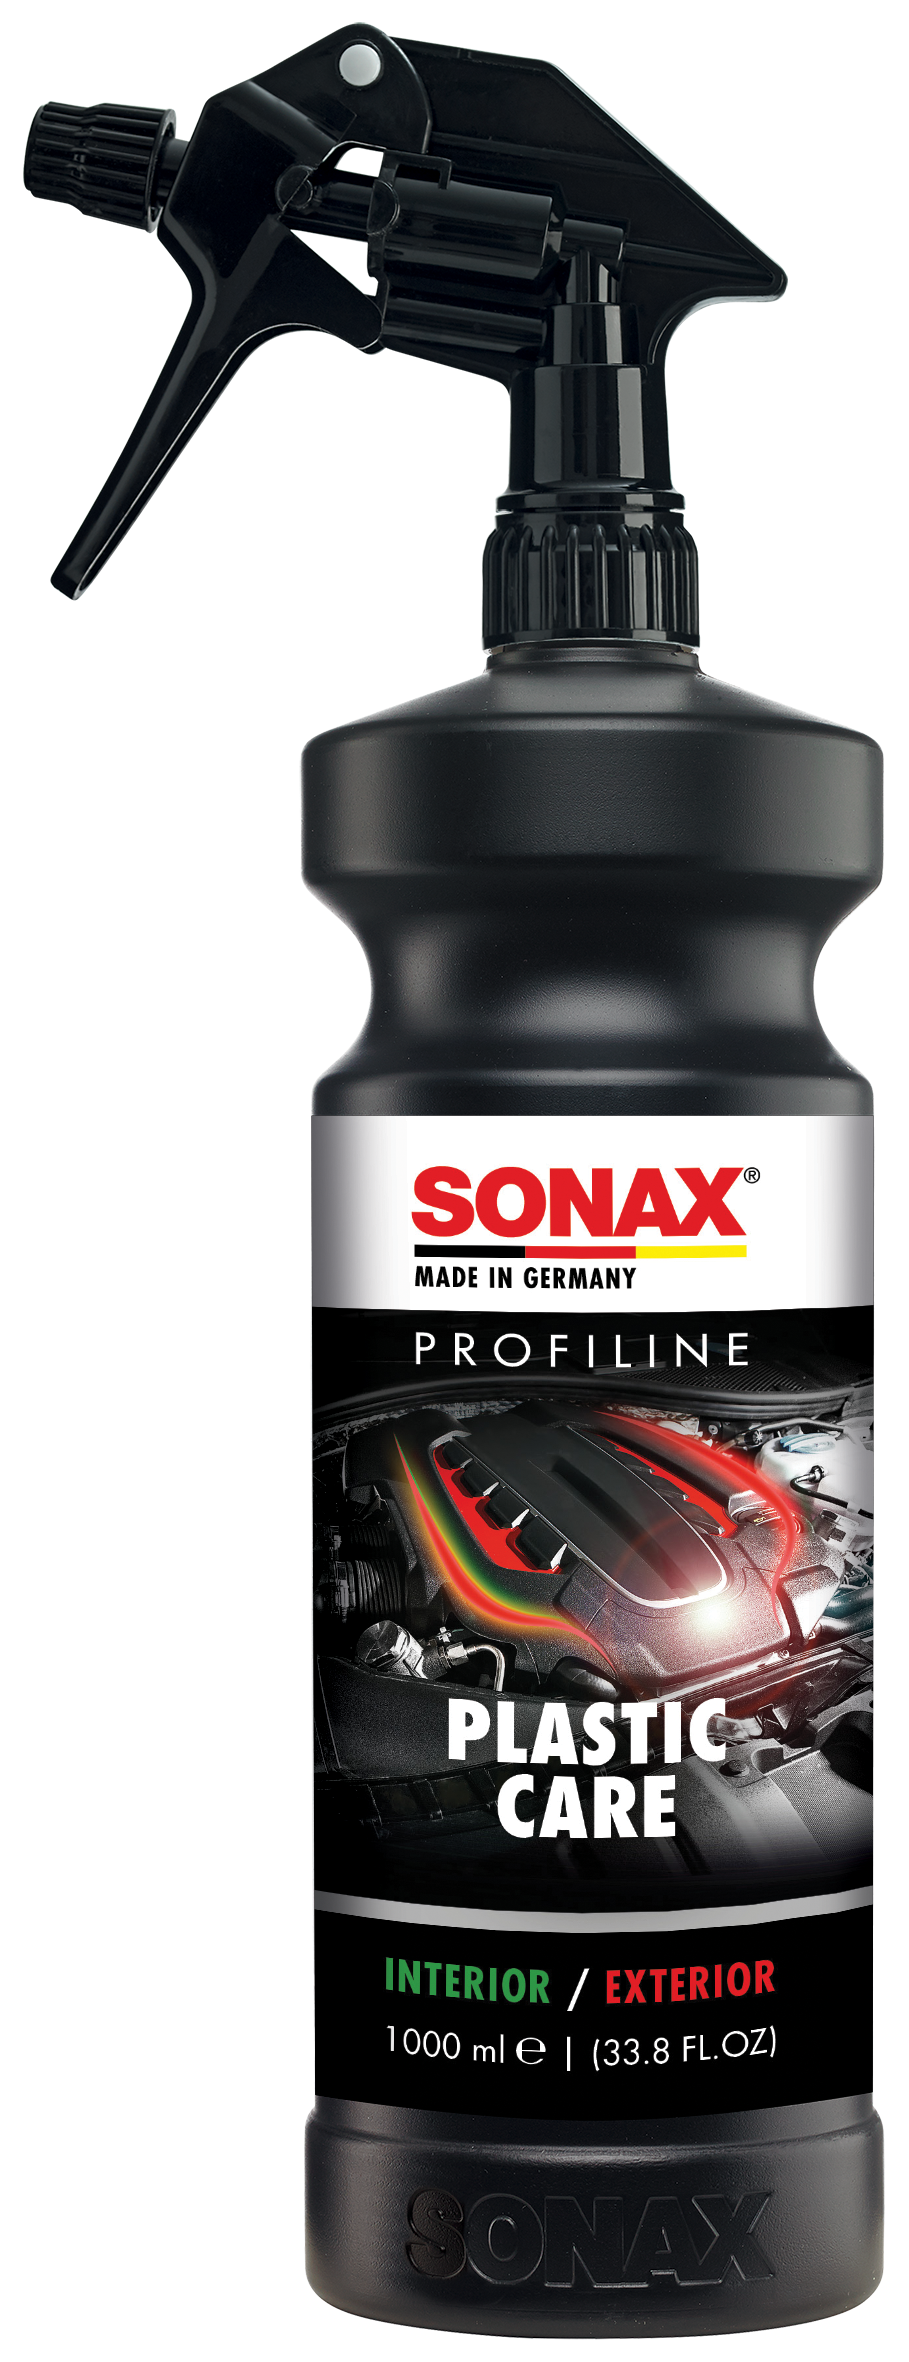 Descarga de imágenes de productos - SONAX Media